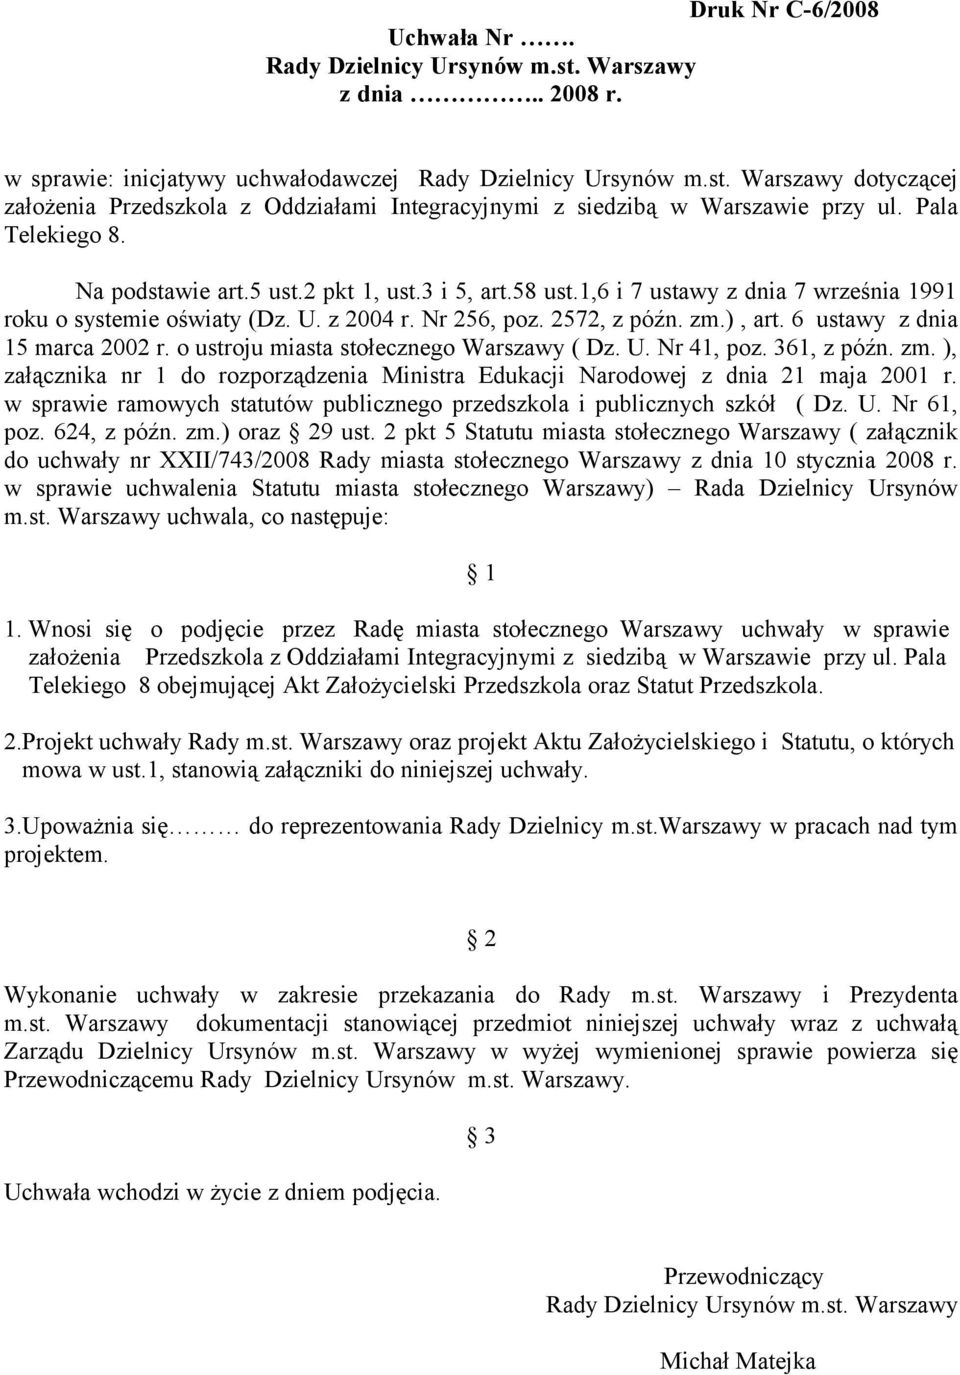 6 ustawy z dnia 15 marca 2002 r. o ustroju miasta stołecznego Warszawy ( Dz. U. Nr 41, poz. 361, z późn. zm. ), załącznika nr 1 do rozporządzenia Ministra Edukacji Narodowej z dnia 21 maja 2001 r.